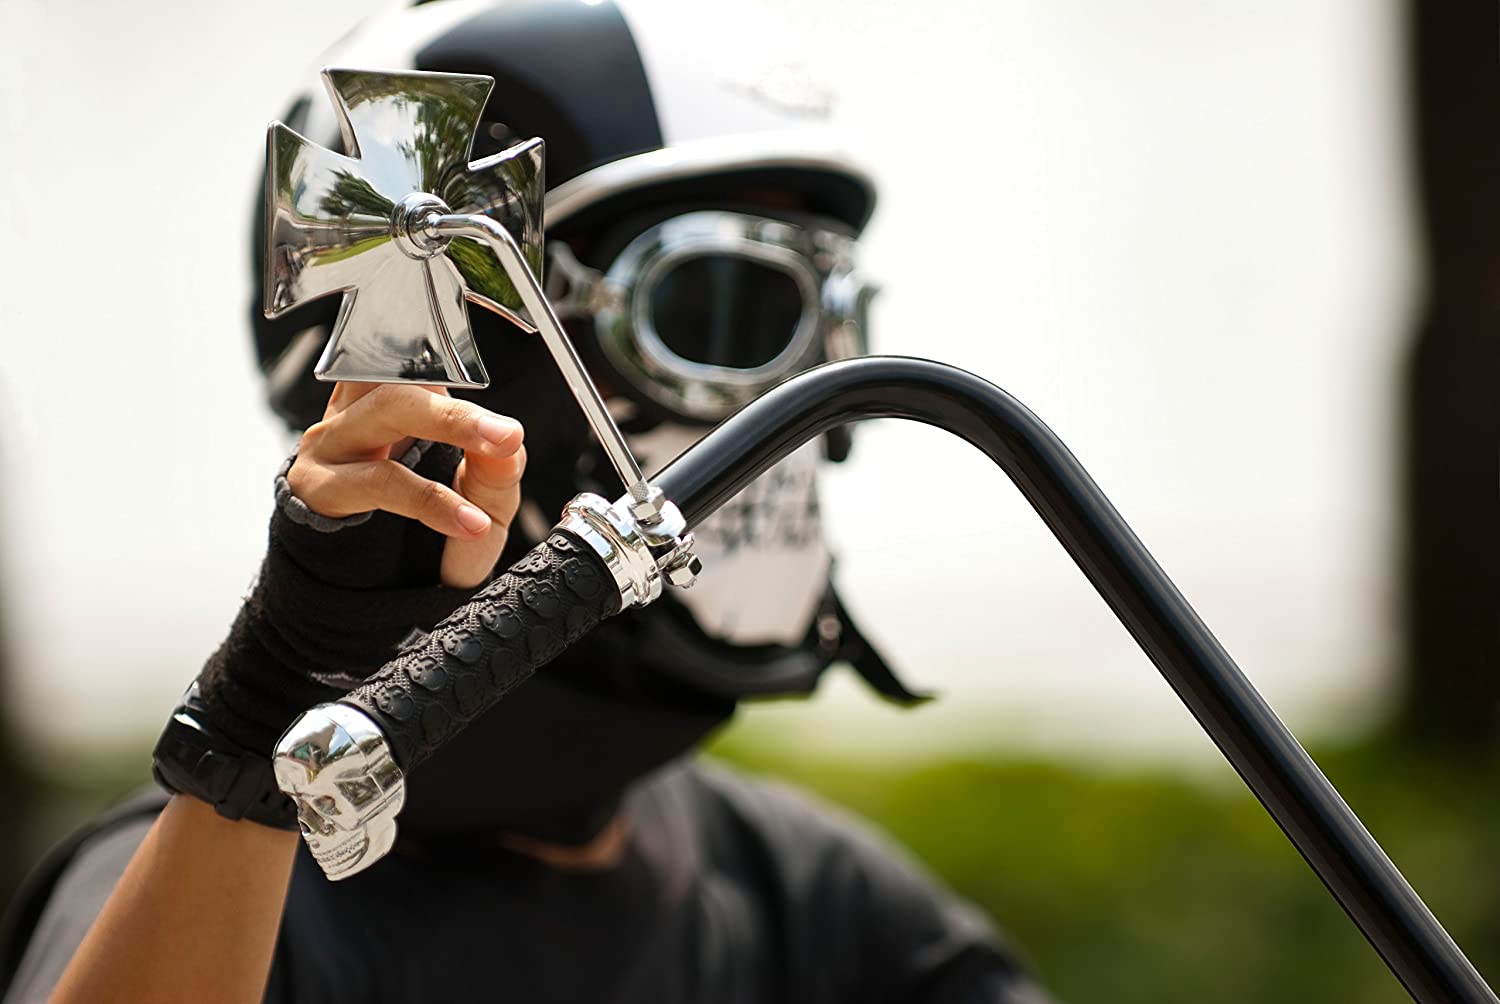 motorcycle mask